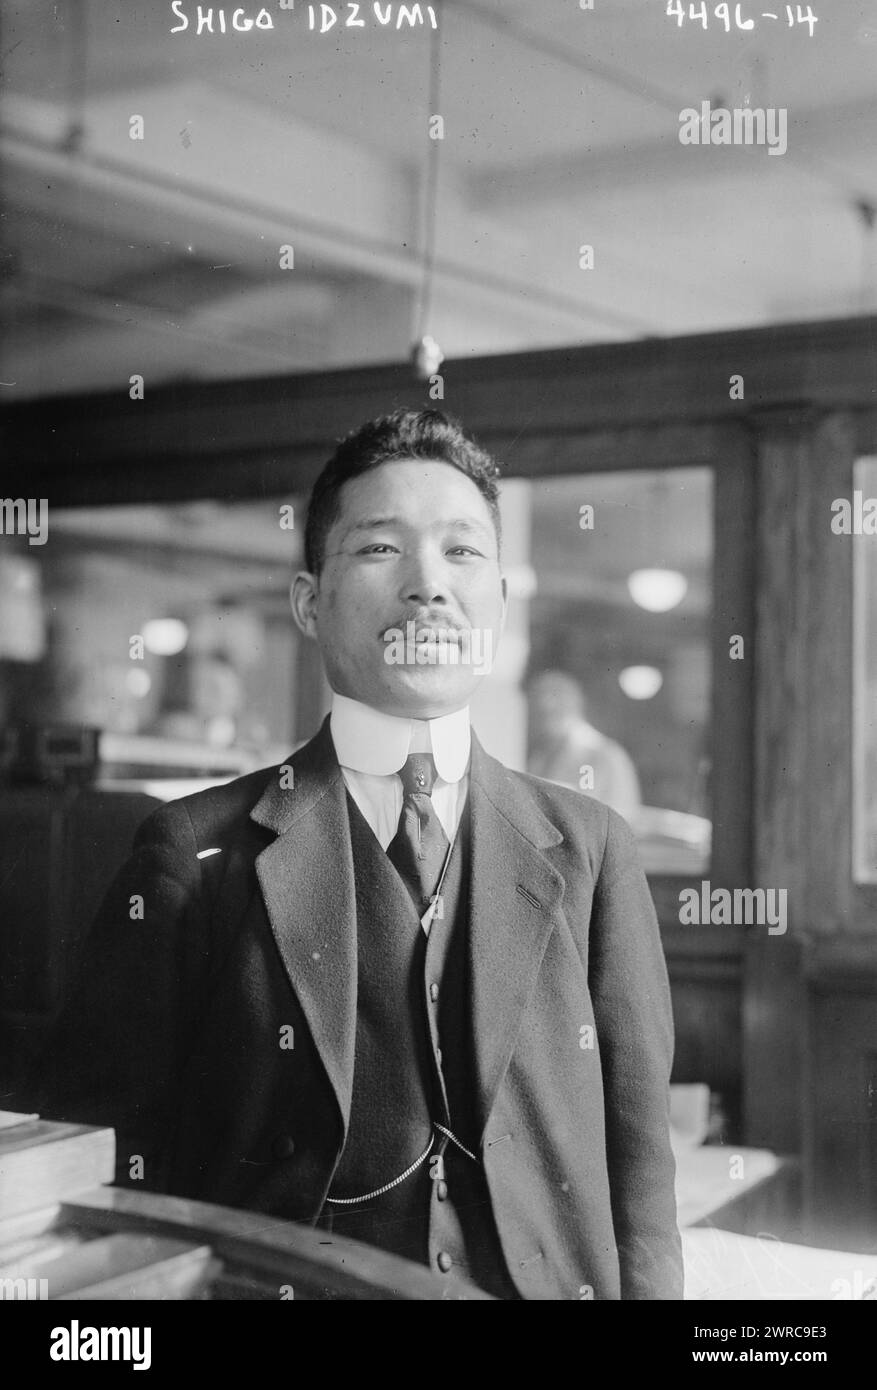 Shigo Idzumi, la fotografia mostra che Shigo Idzumi era il Segretario del Dipartimento delle Finanze del Giappone che venne negli Stati Uniti nel 1918 per studiare la tassazione di guerra. 1915 e ca. 1920, Glass negative, 1 negativo: Glass Foto Stock